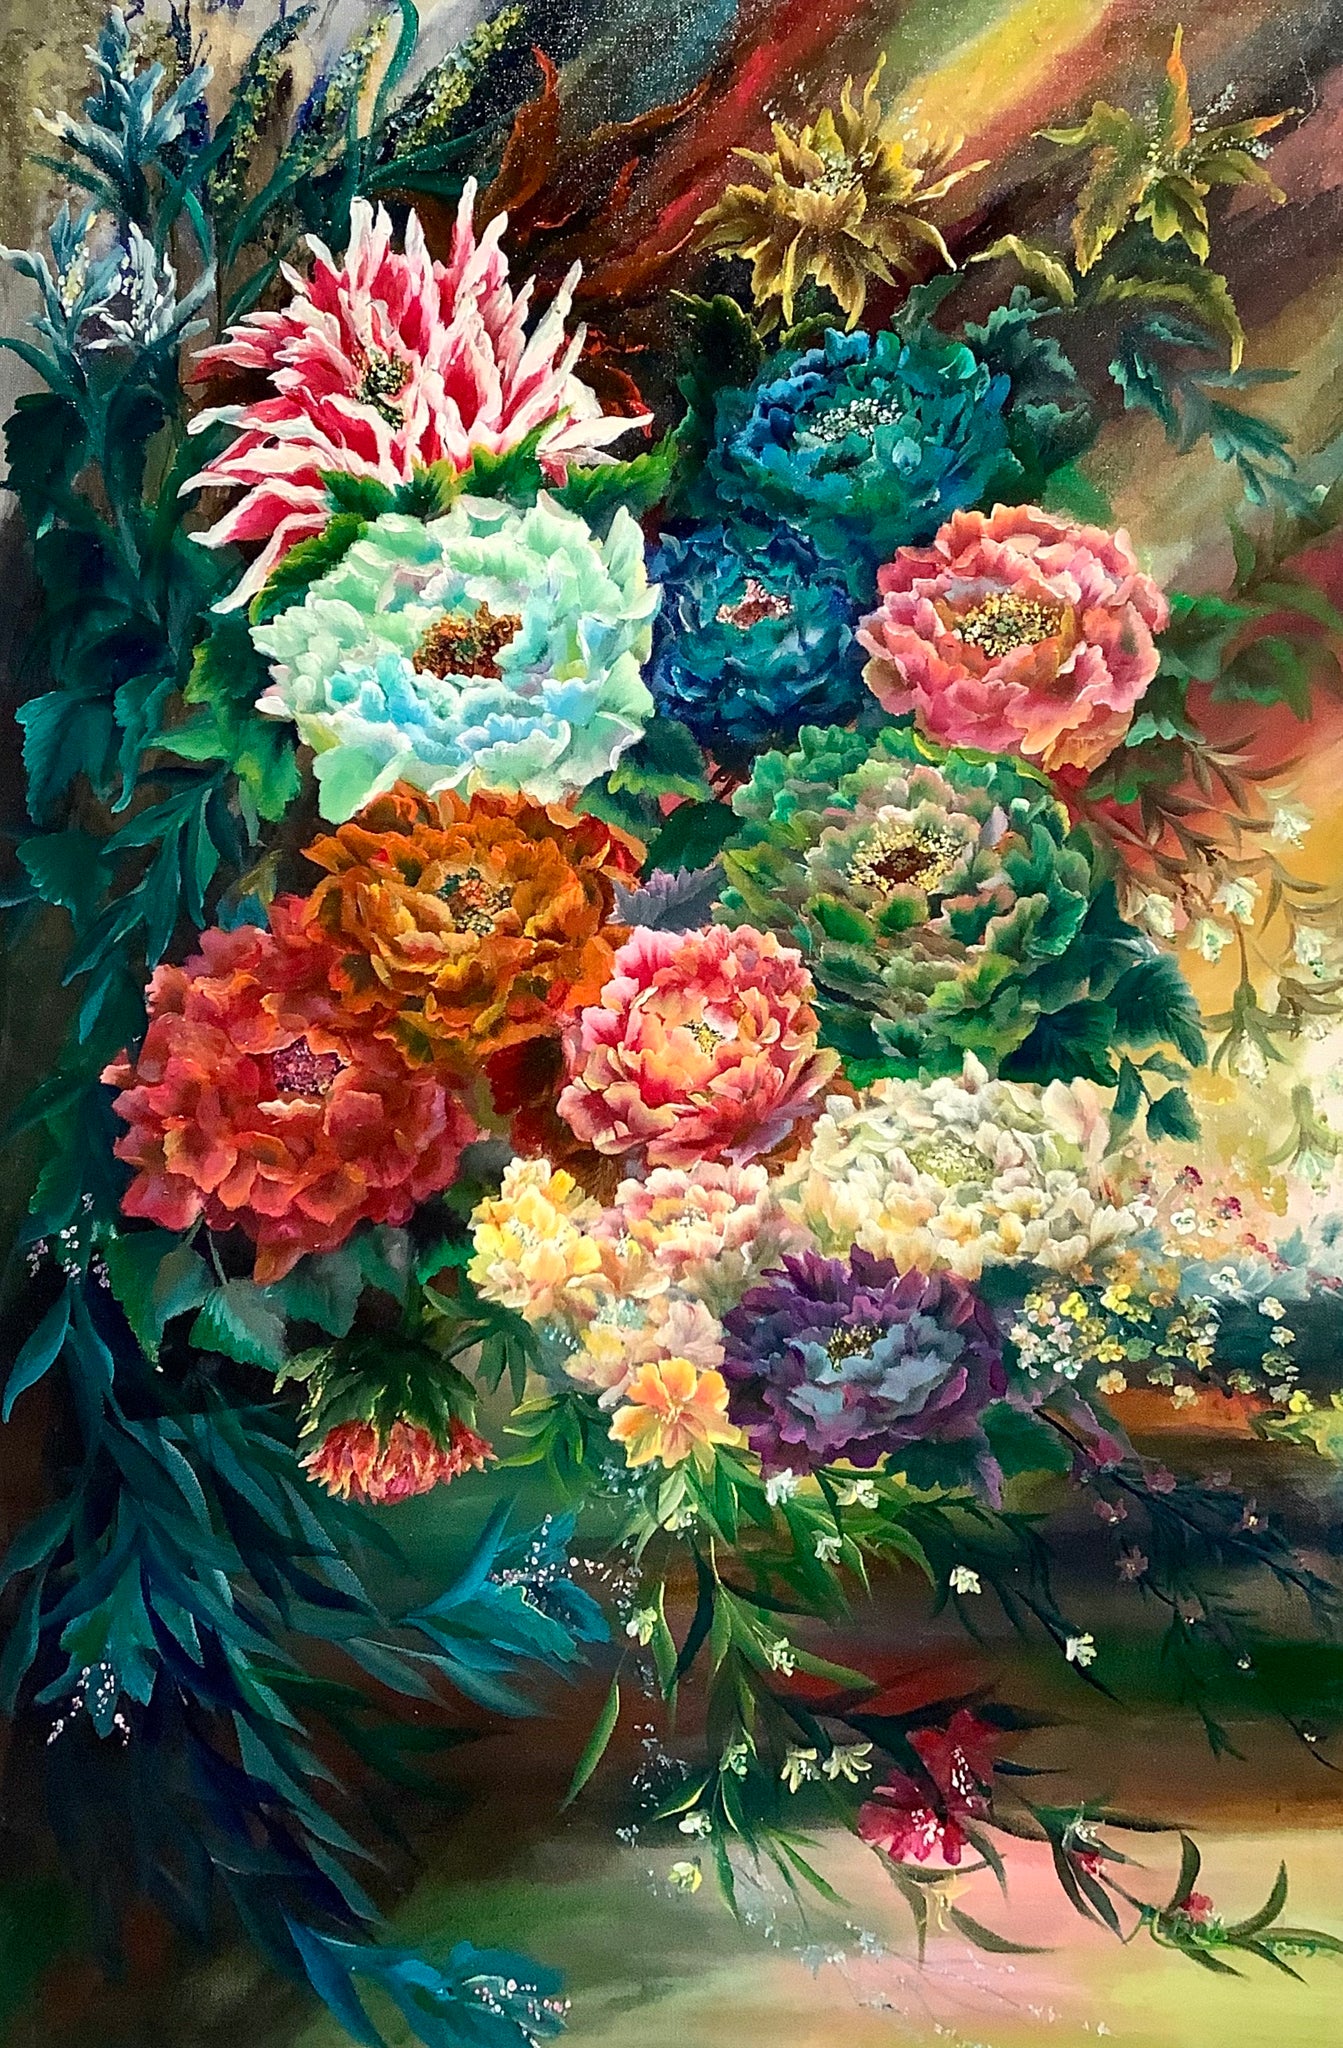 Peony Bouquet by Huang Bin Bin (Beryl Huang)